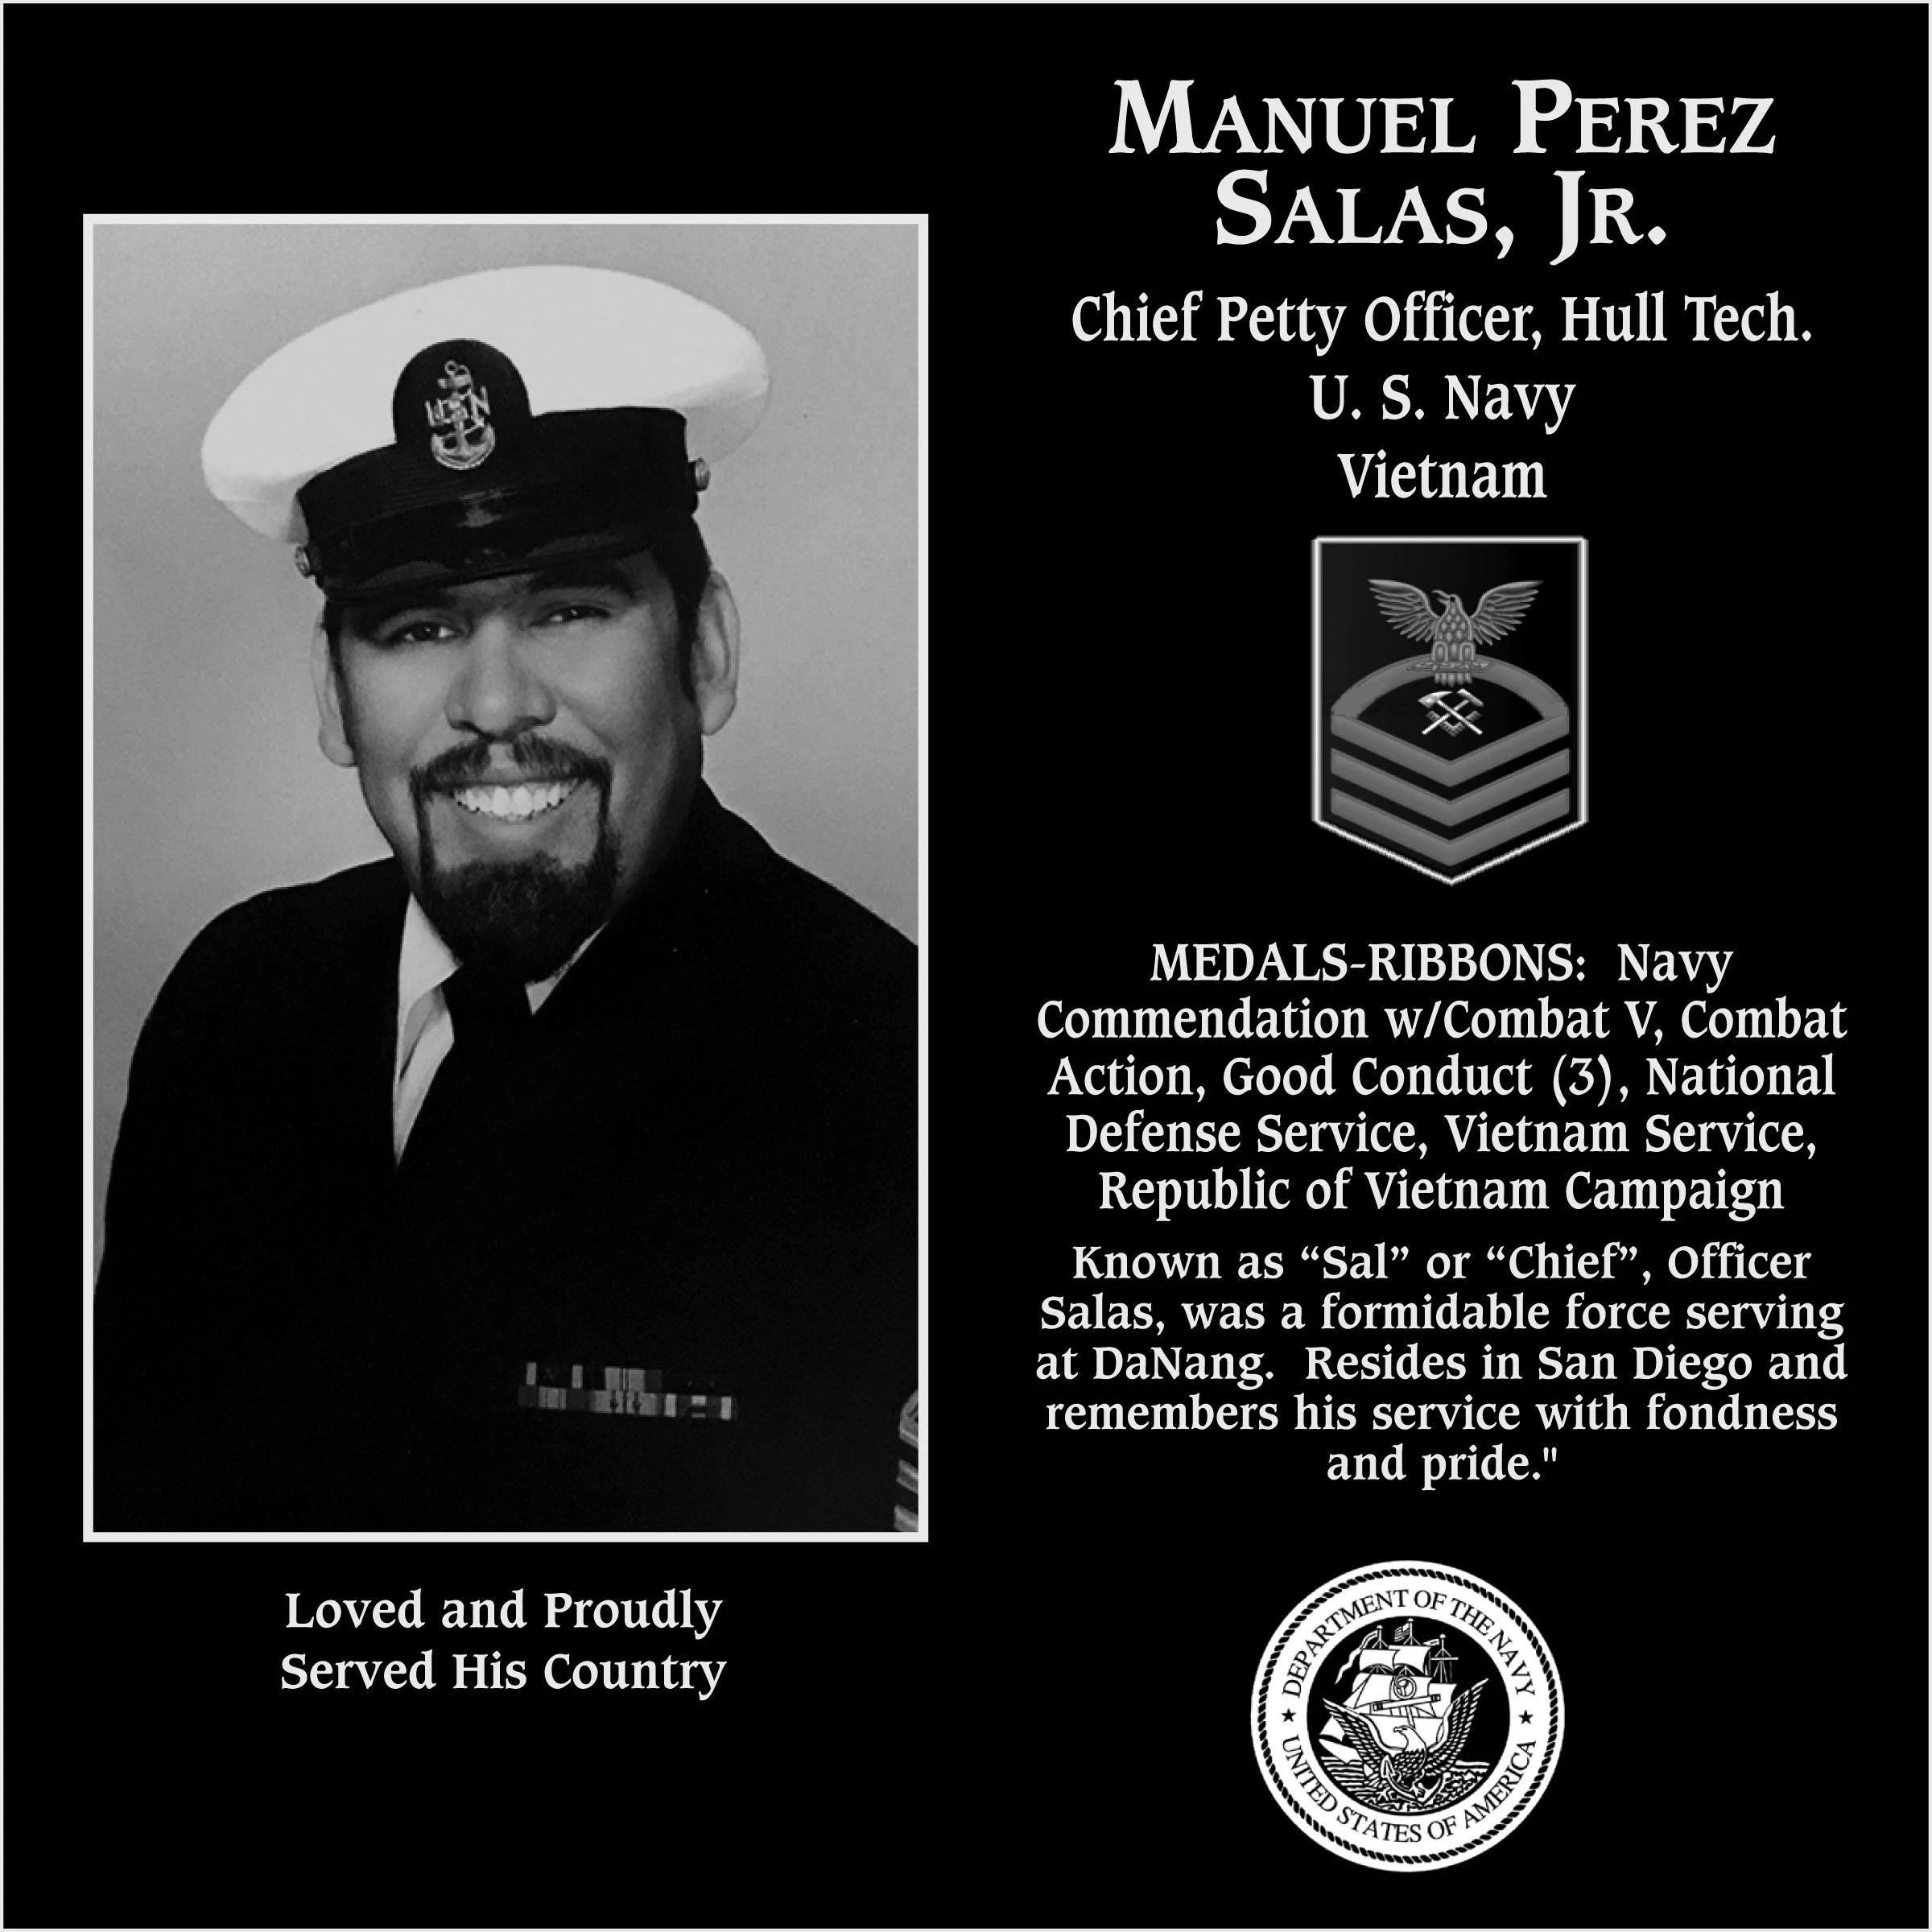 Manuel Perez “Sal, Chief” Salas, jr